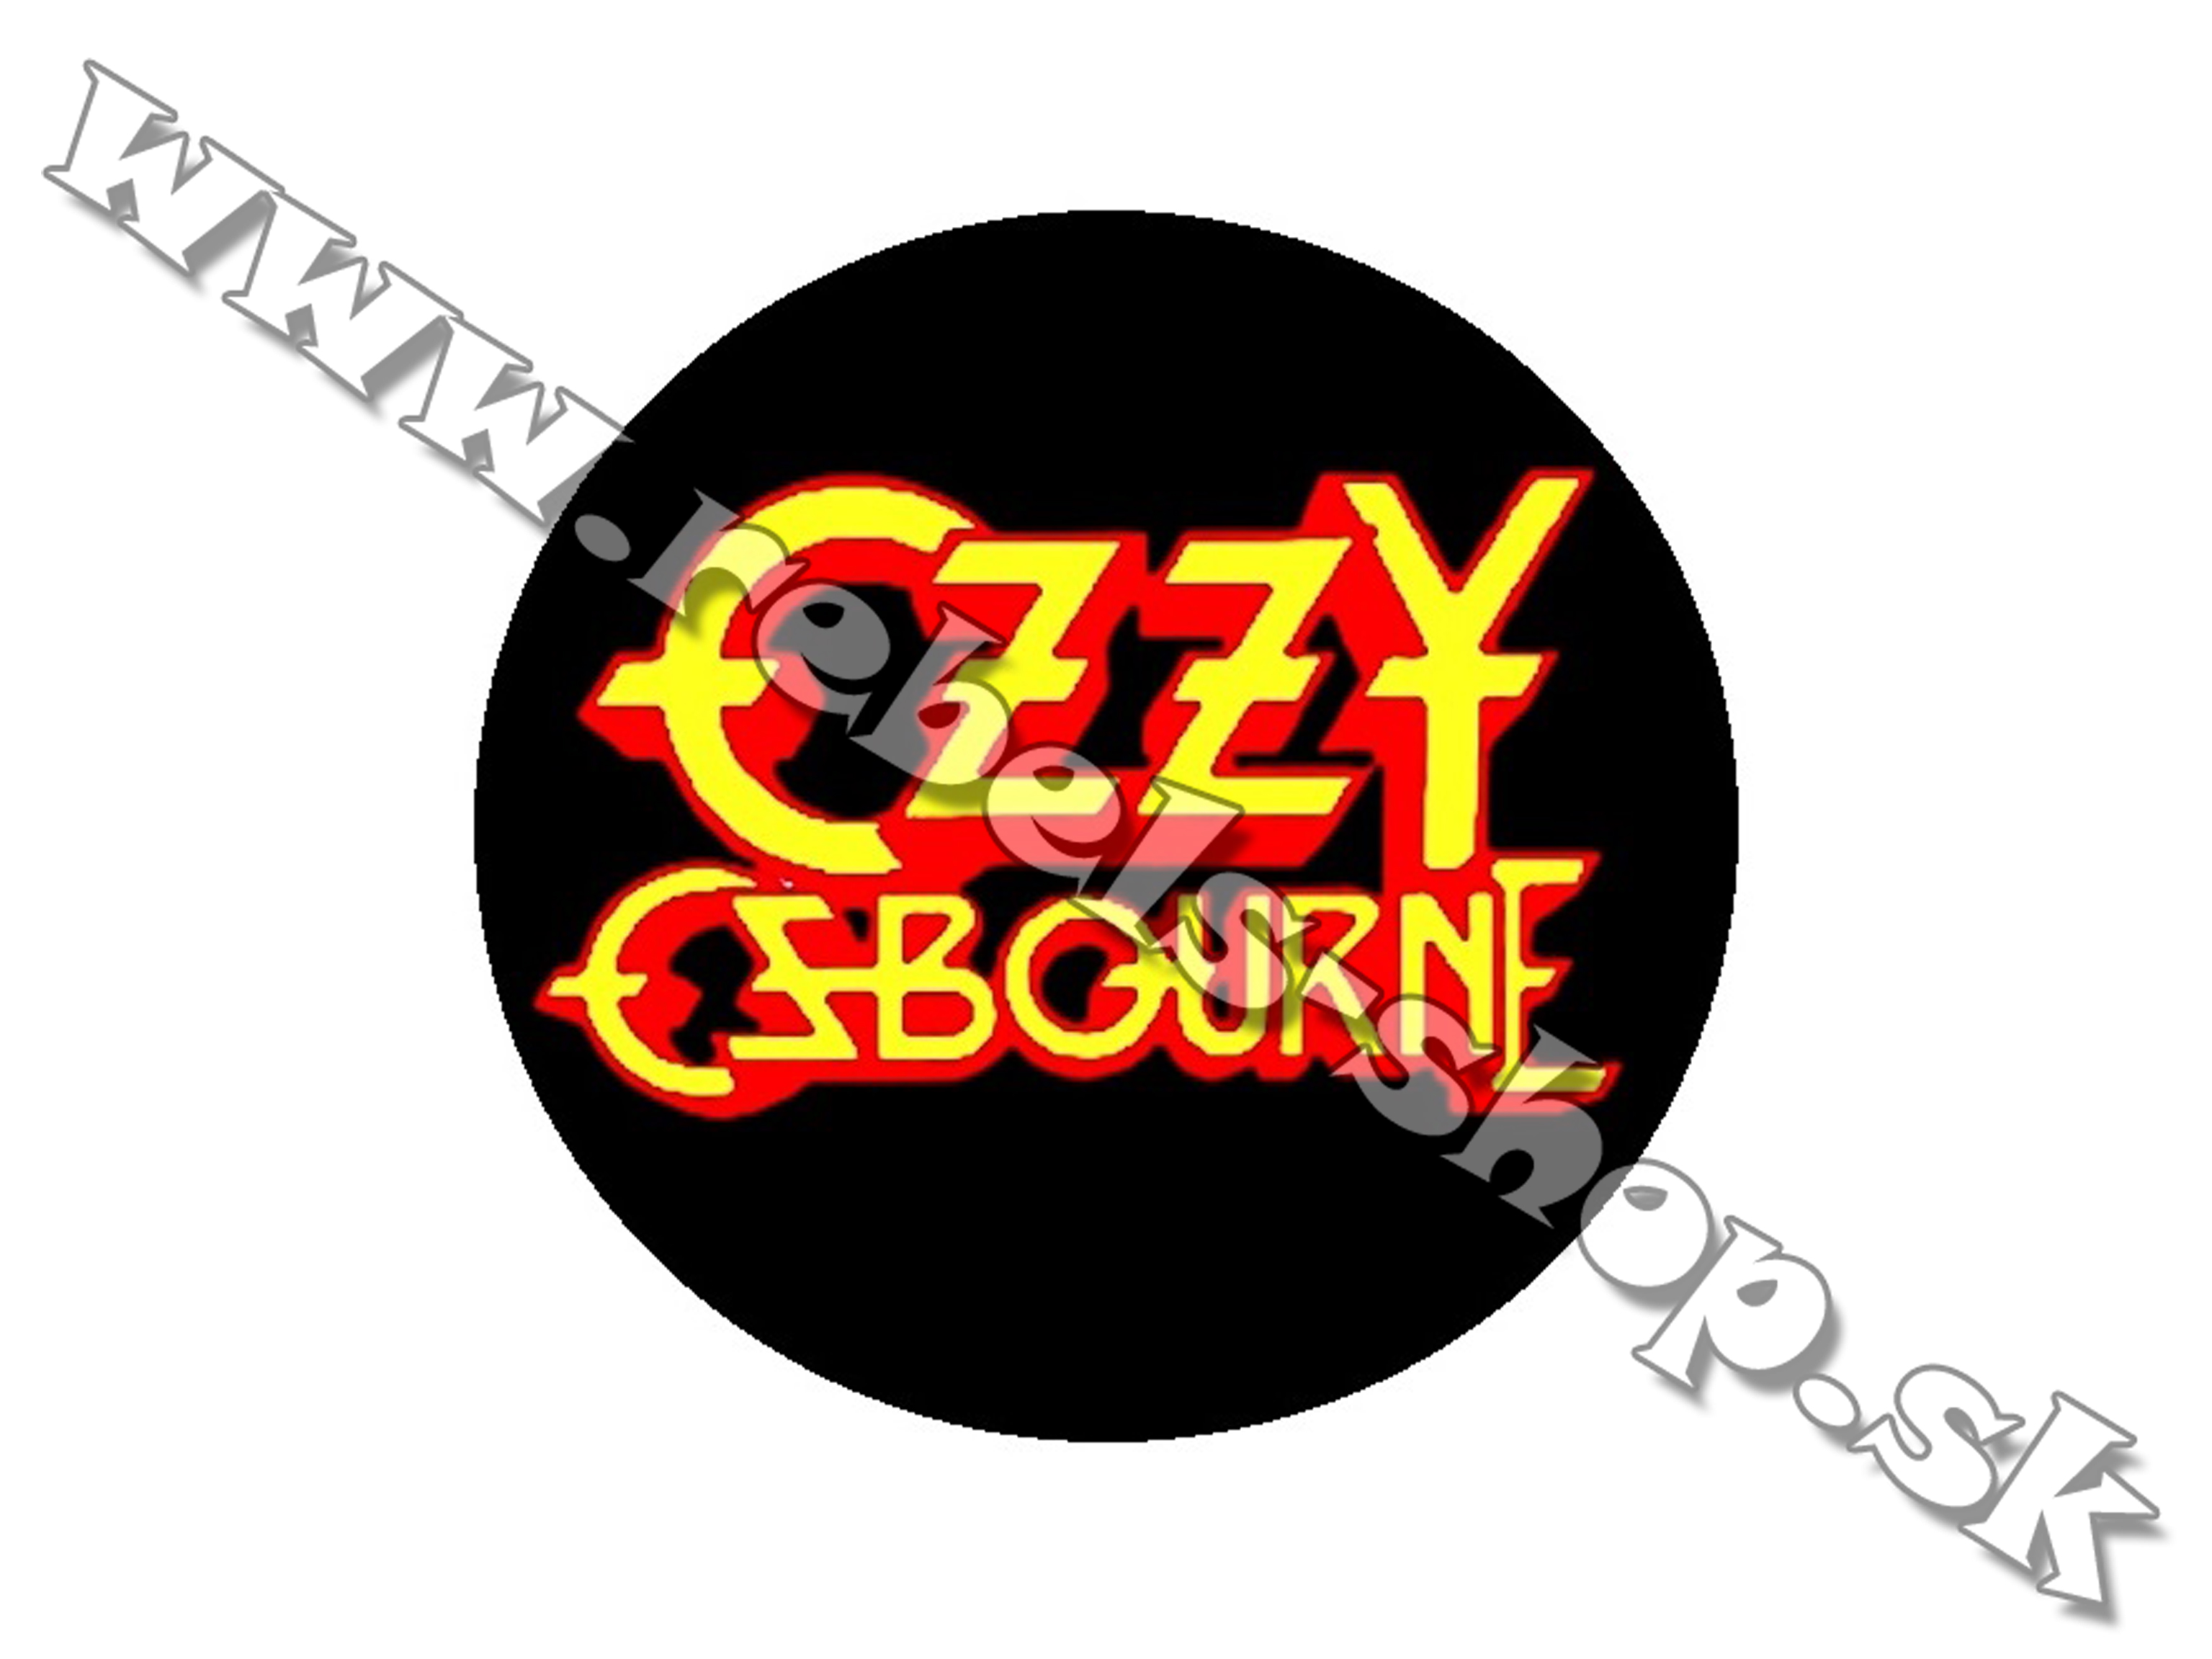 Odznak "Ozzy Osbourne"